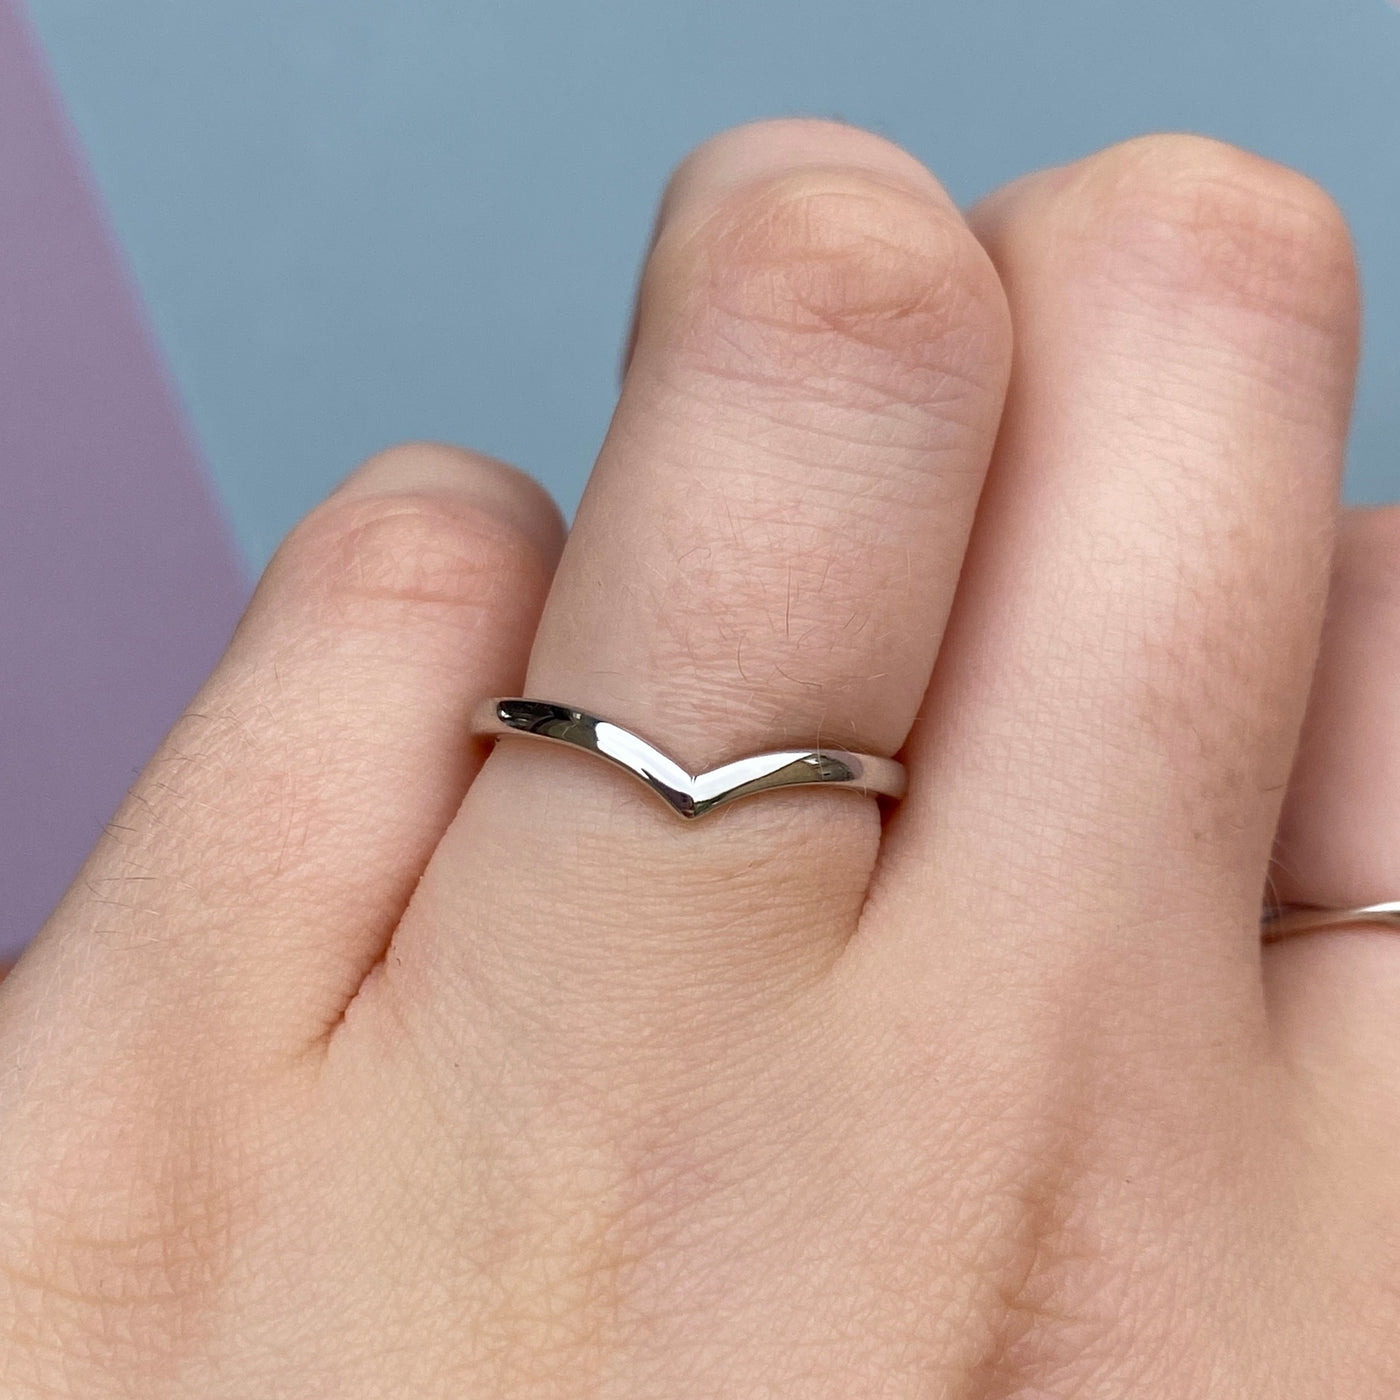 Ellis - Polished Wishbone Shaped Wedding Ring - Made-to-Order